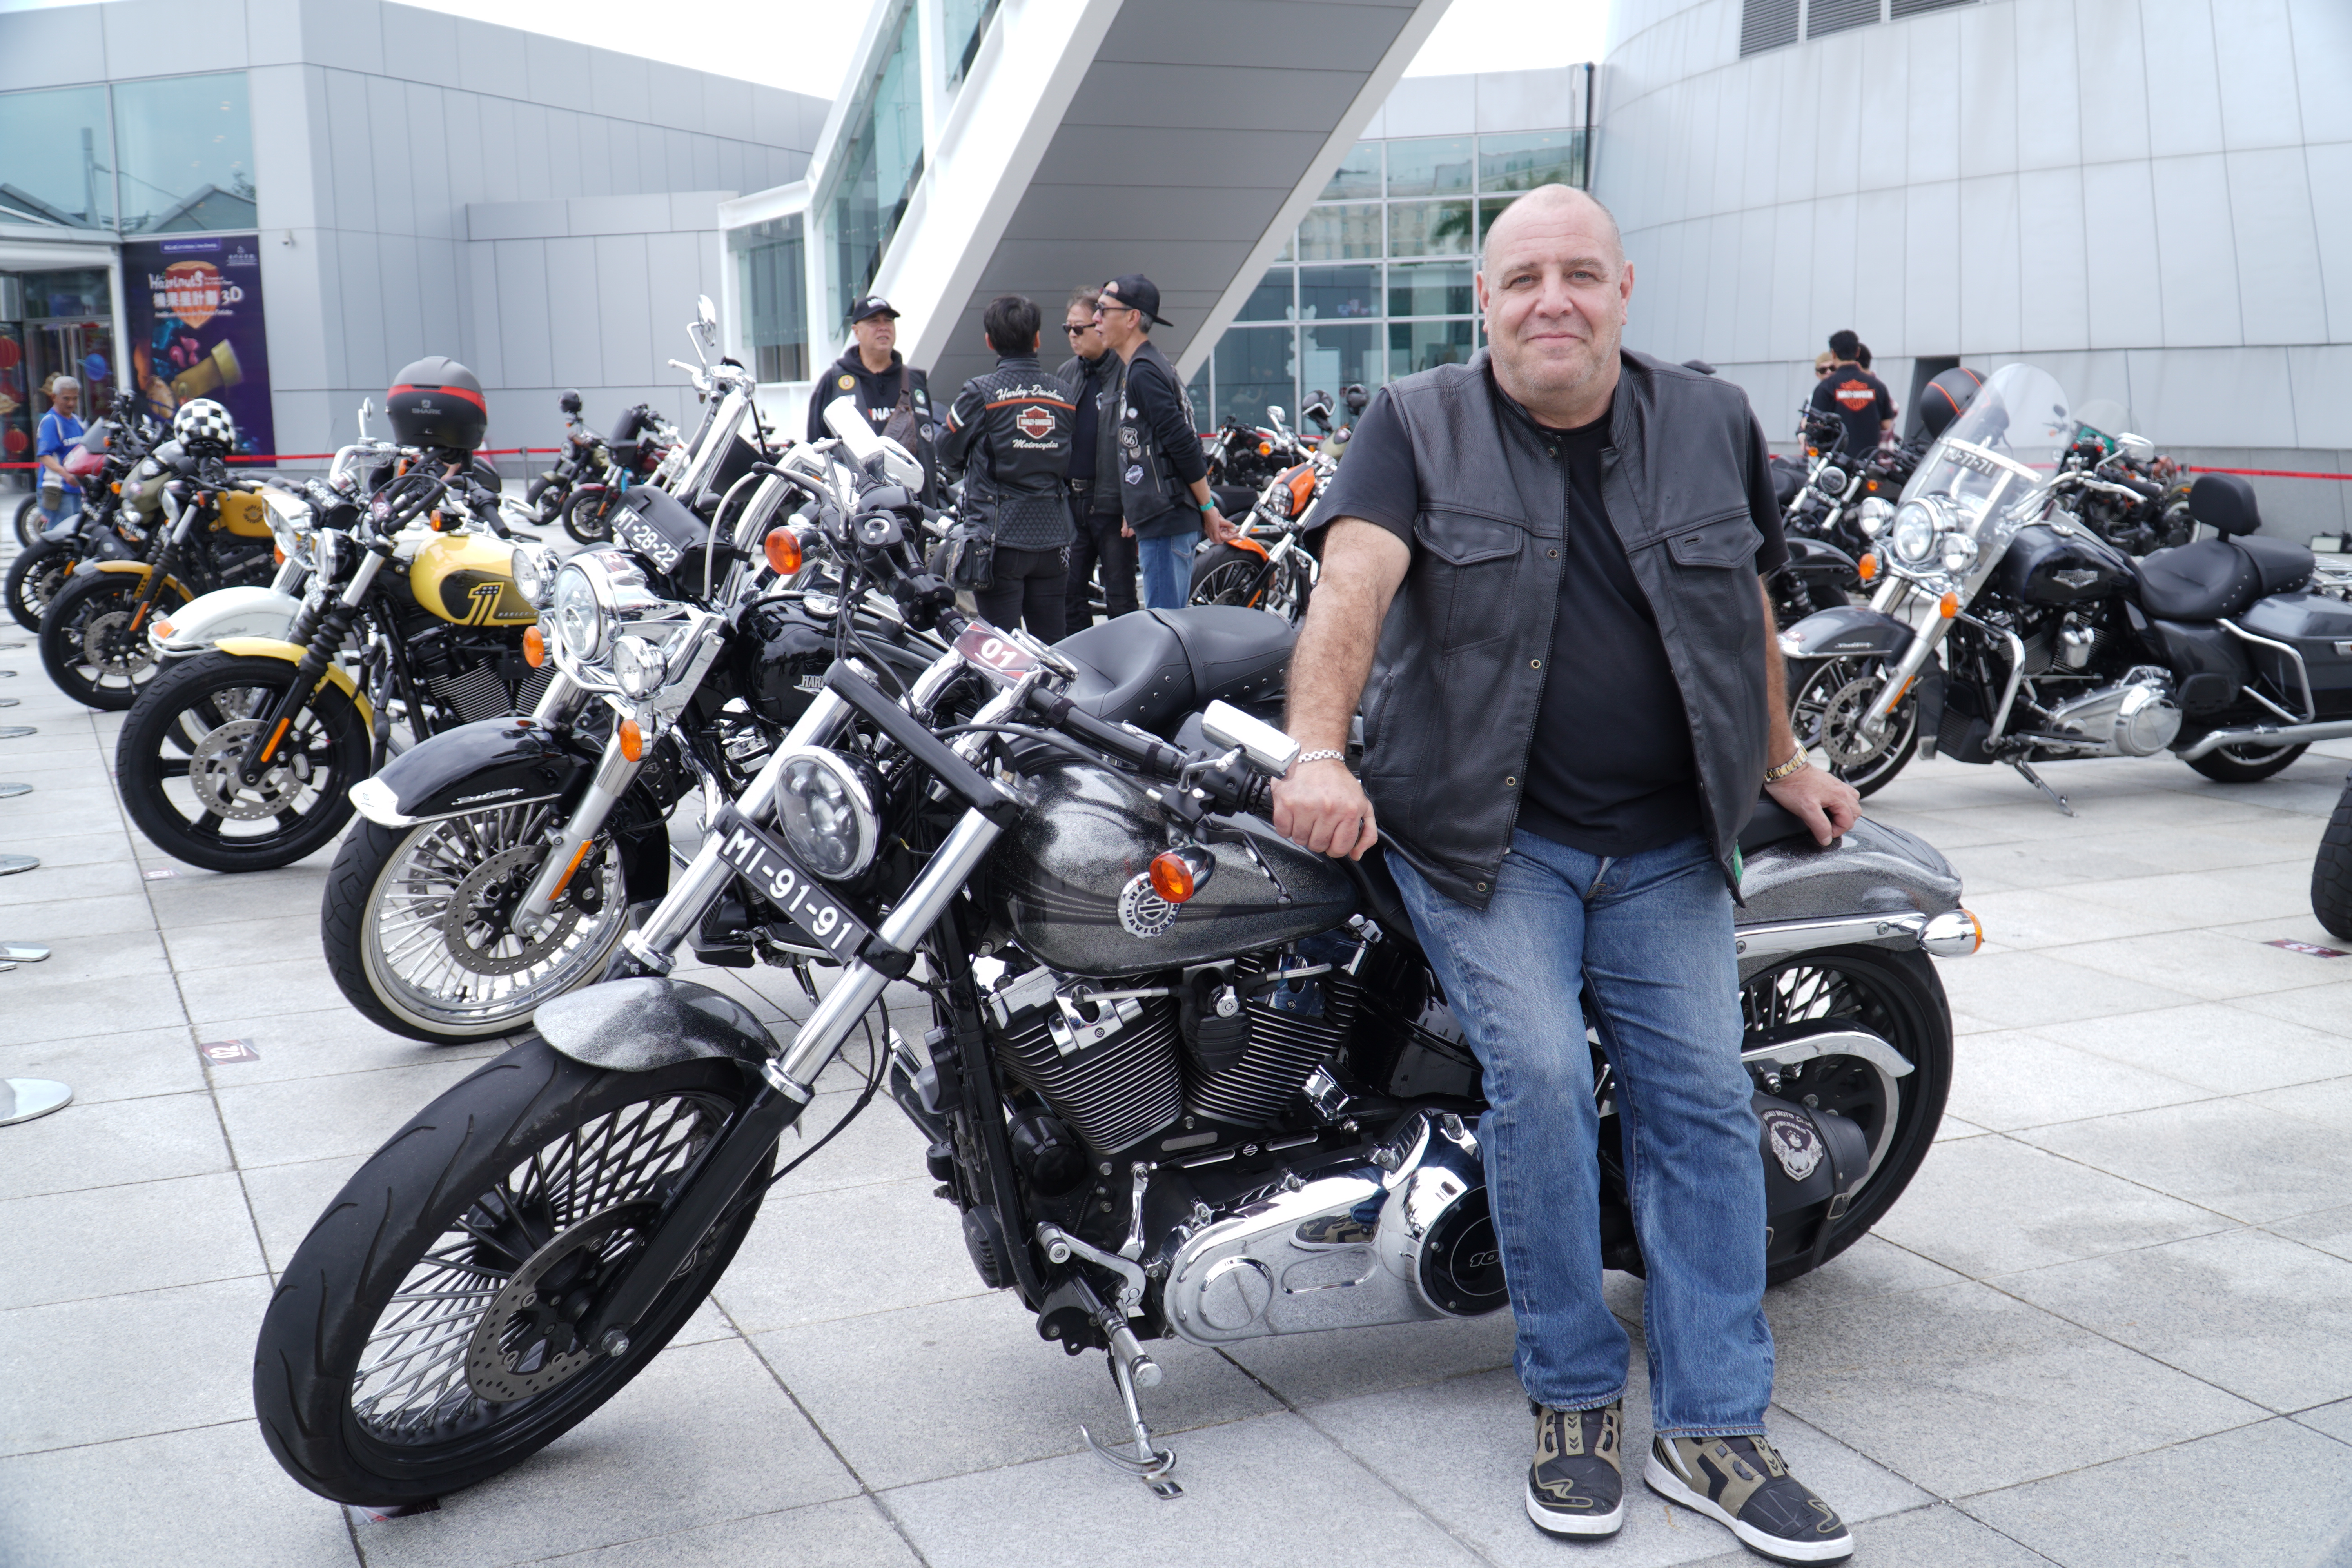 B1 澳門摩托車俱樂部會長Jose Rodrigues指本地摩托車文化越漸濃厚.JPG